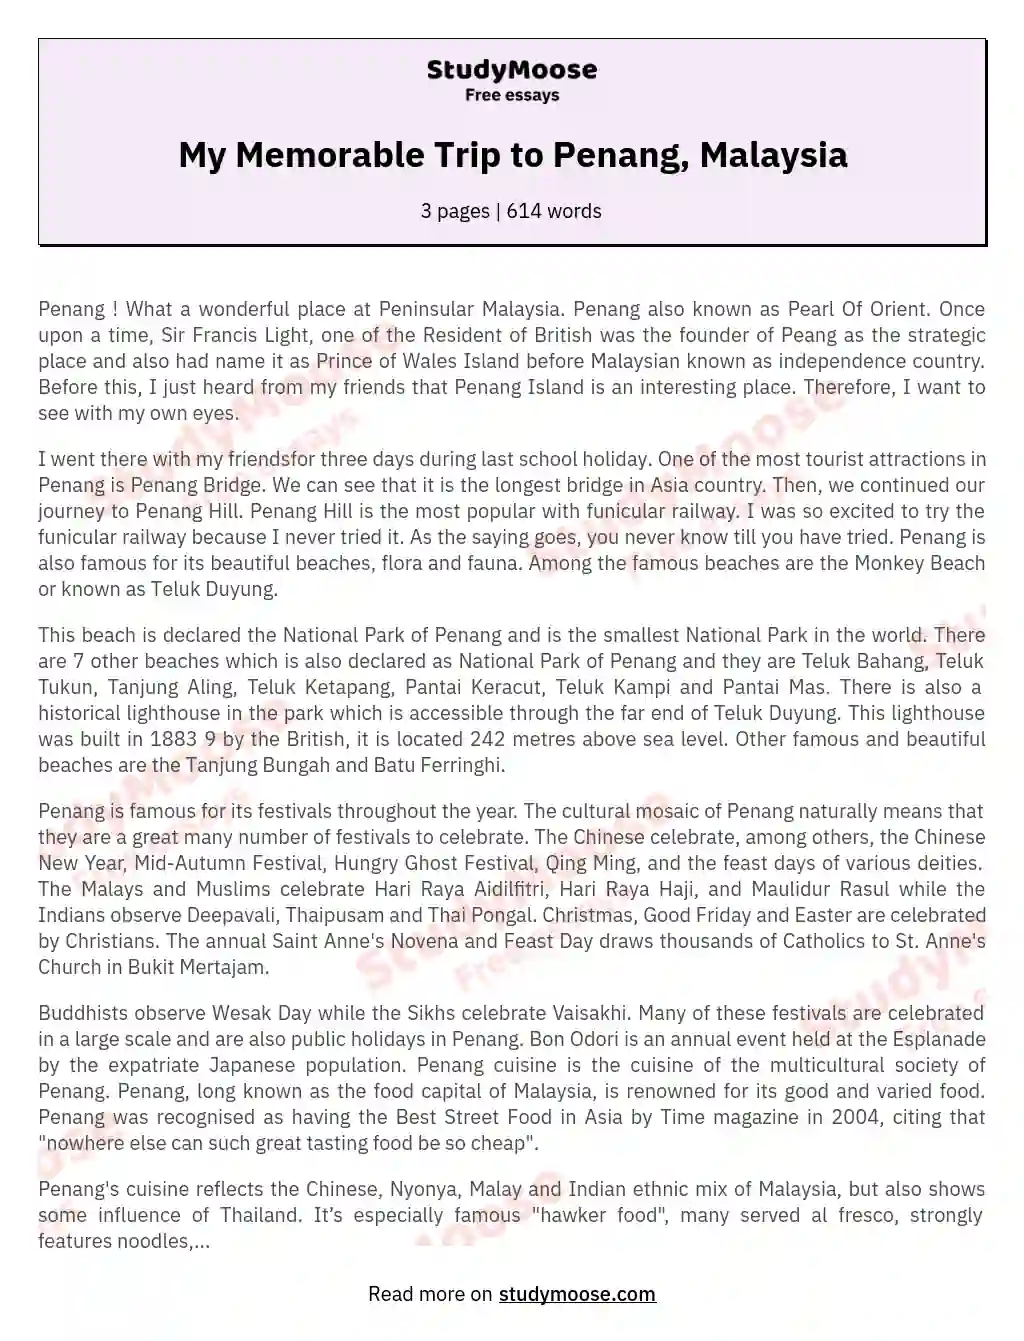 tourism malaysia essay